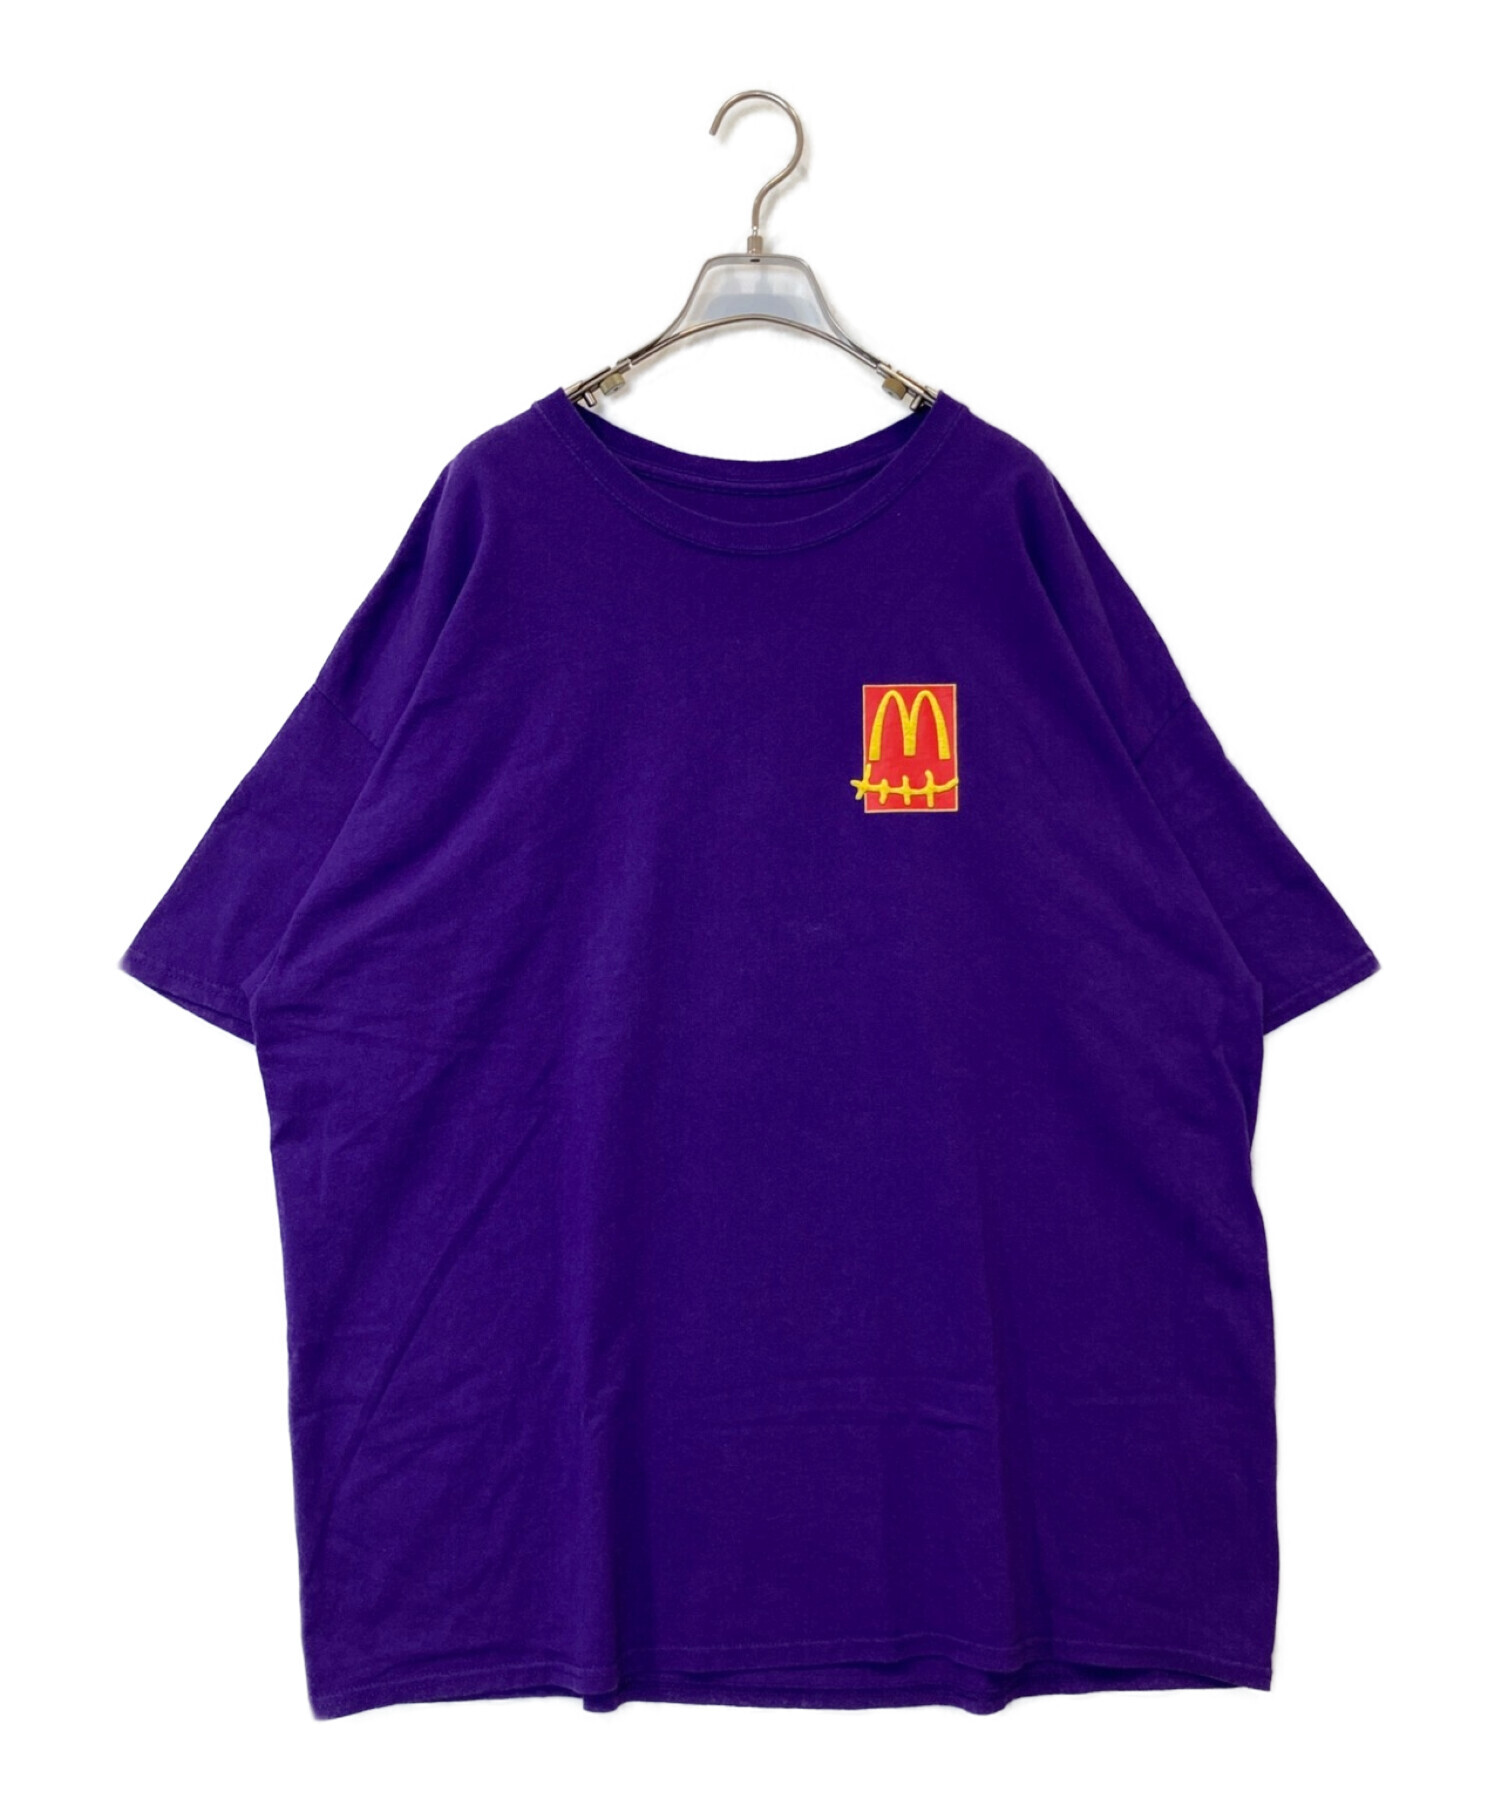 Travis Scott CACTUS JACK (トラヴィス・スコット カクタスジャック) McDonald's (マクドナルド) Action  Figure Series II T-Shirt パープル サイズ:XL